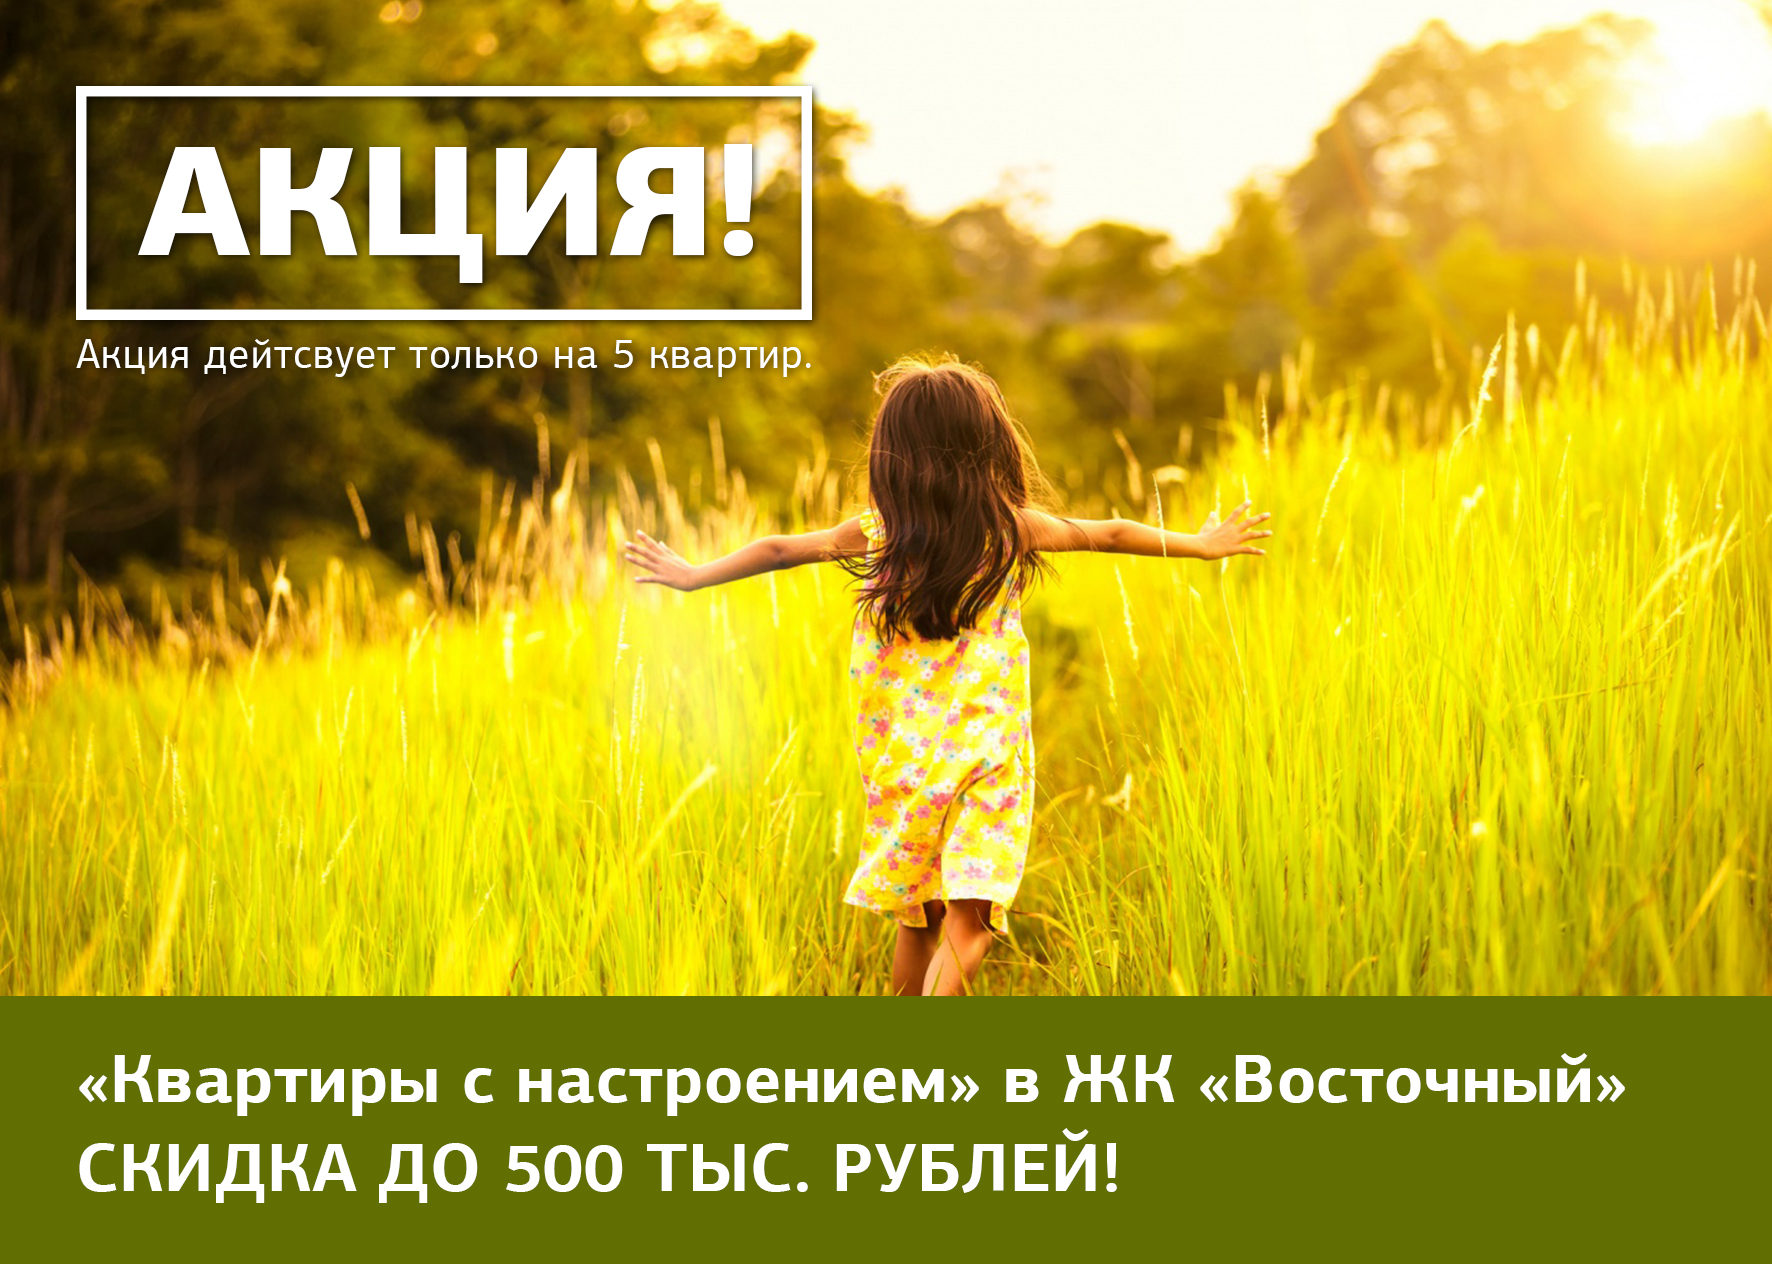 Купи квартиру в ЖК «Восточный» со скидкой до 500 тыс. рублей – подними себе настроение!